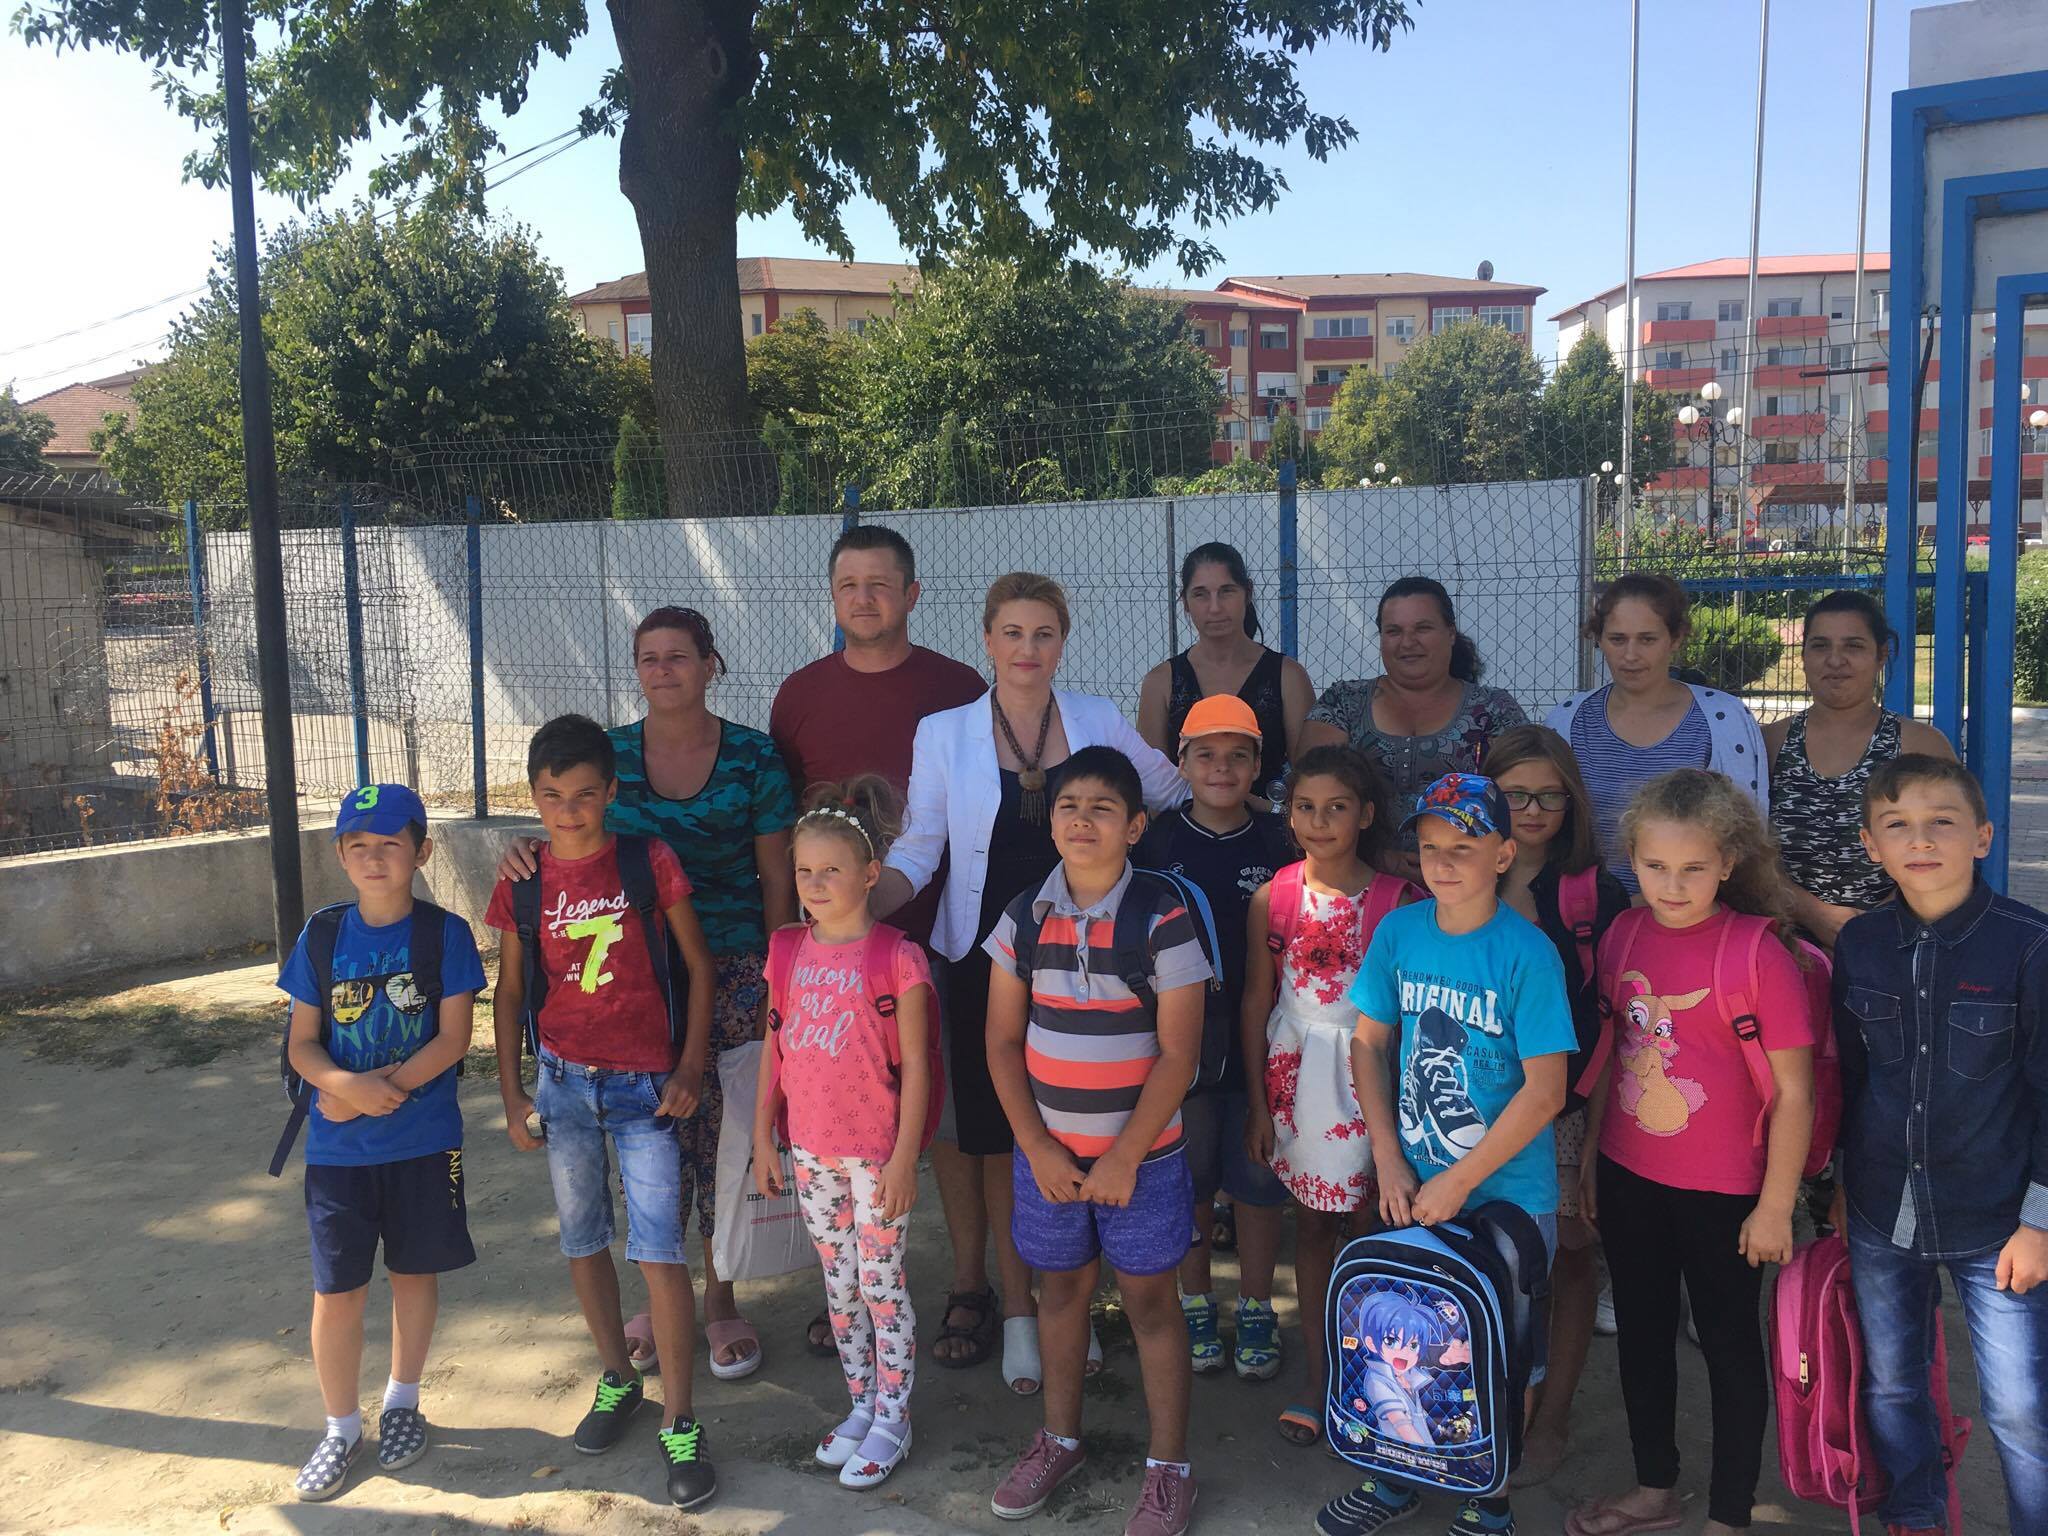 Zeci de copii din Macin şi Isaccea vor începe luni şcoala cu ghiozdane şi rechizite şcolare noi oferite de doamna deputat Anişoara Radu